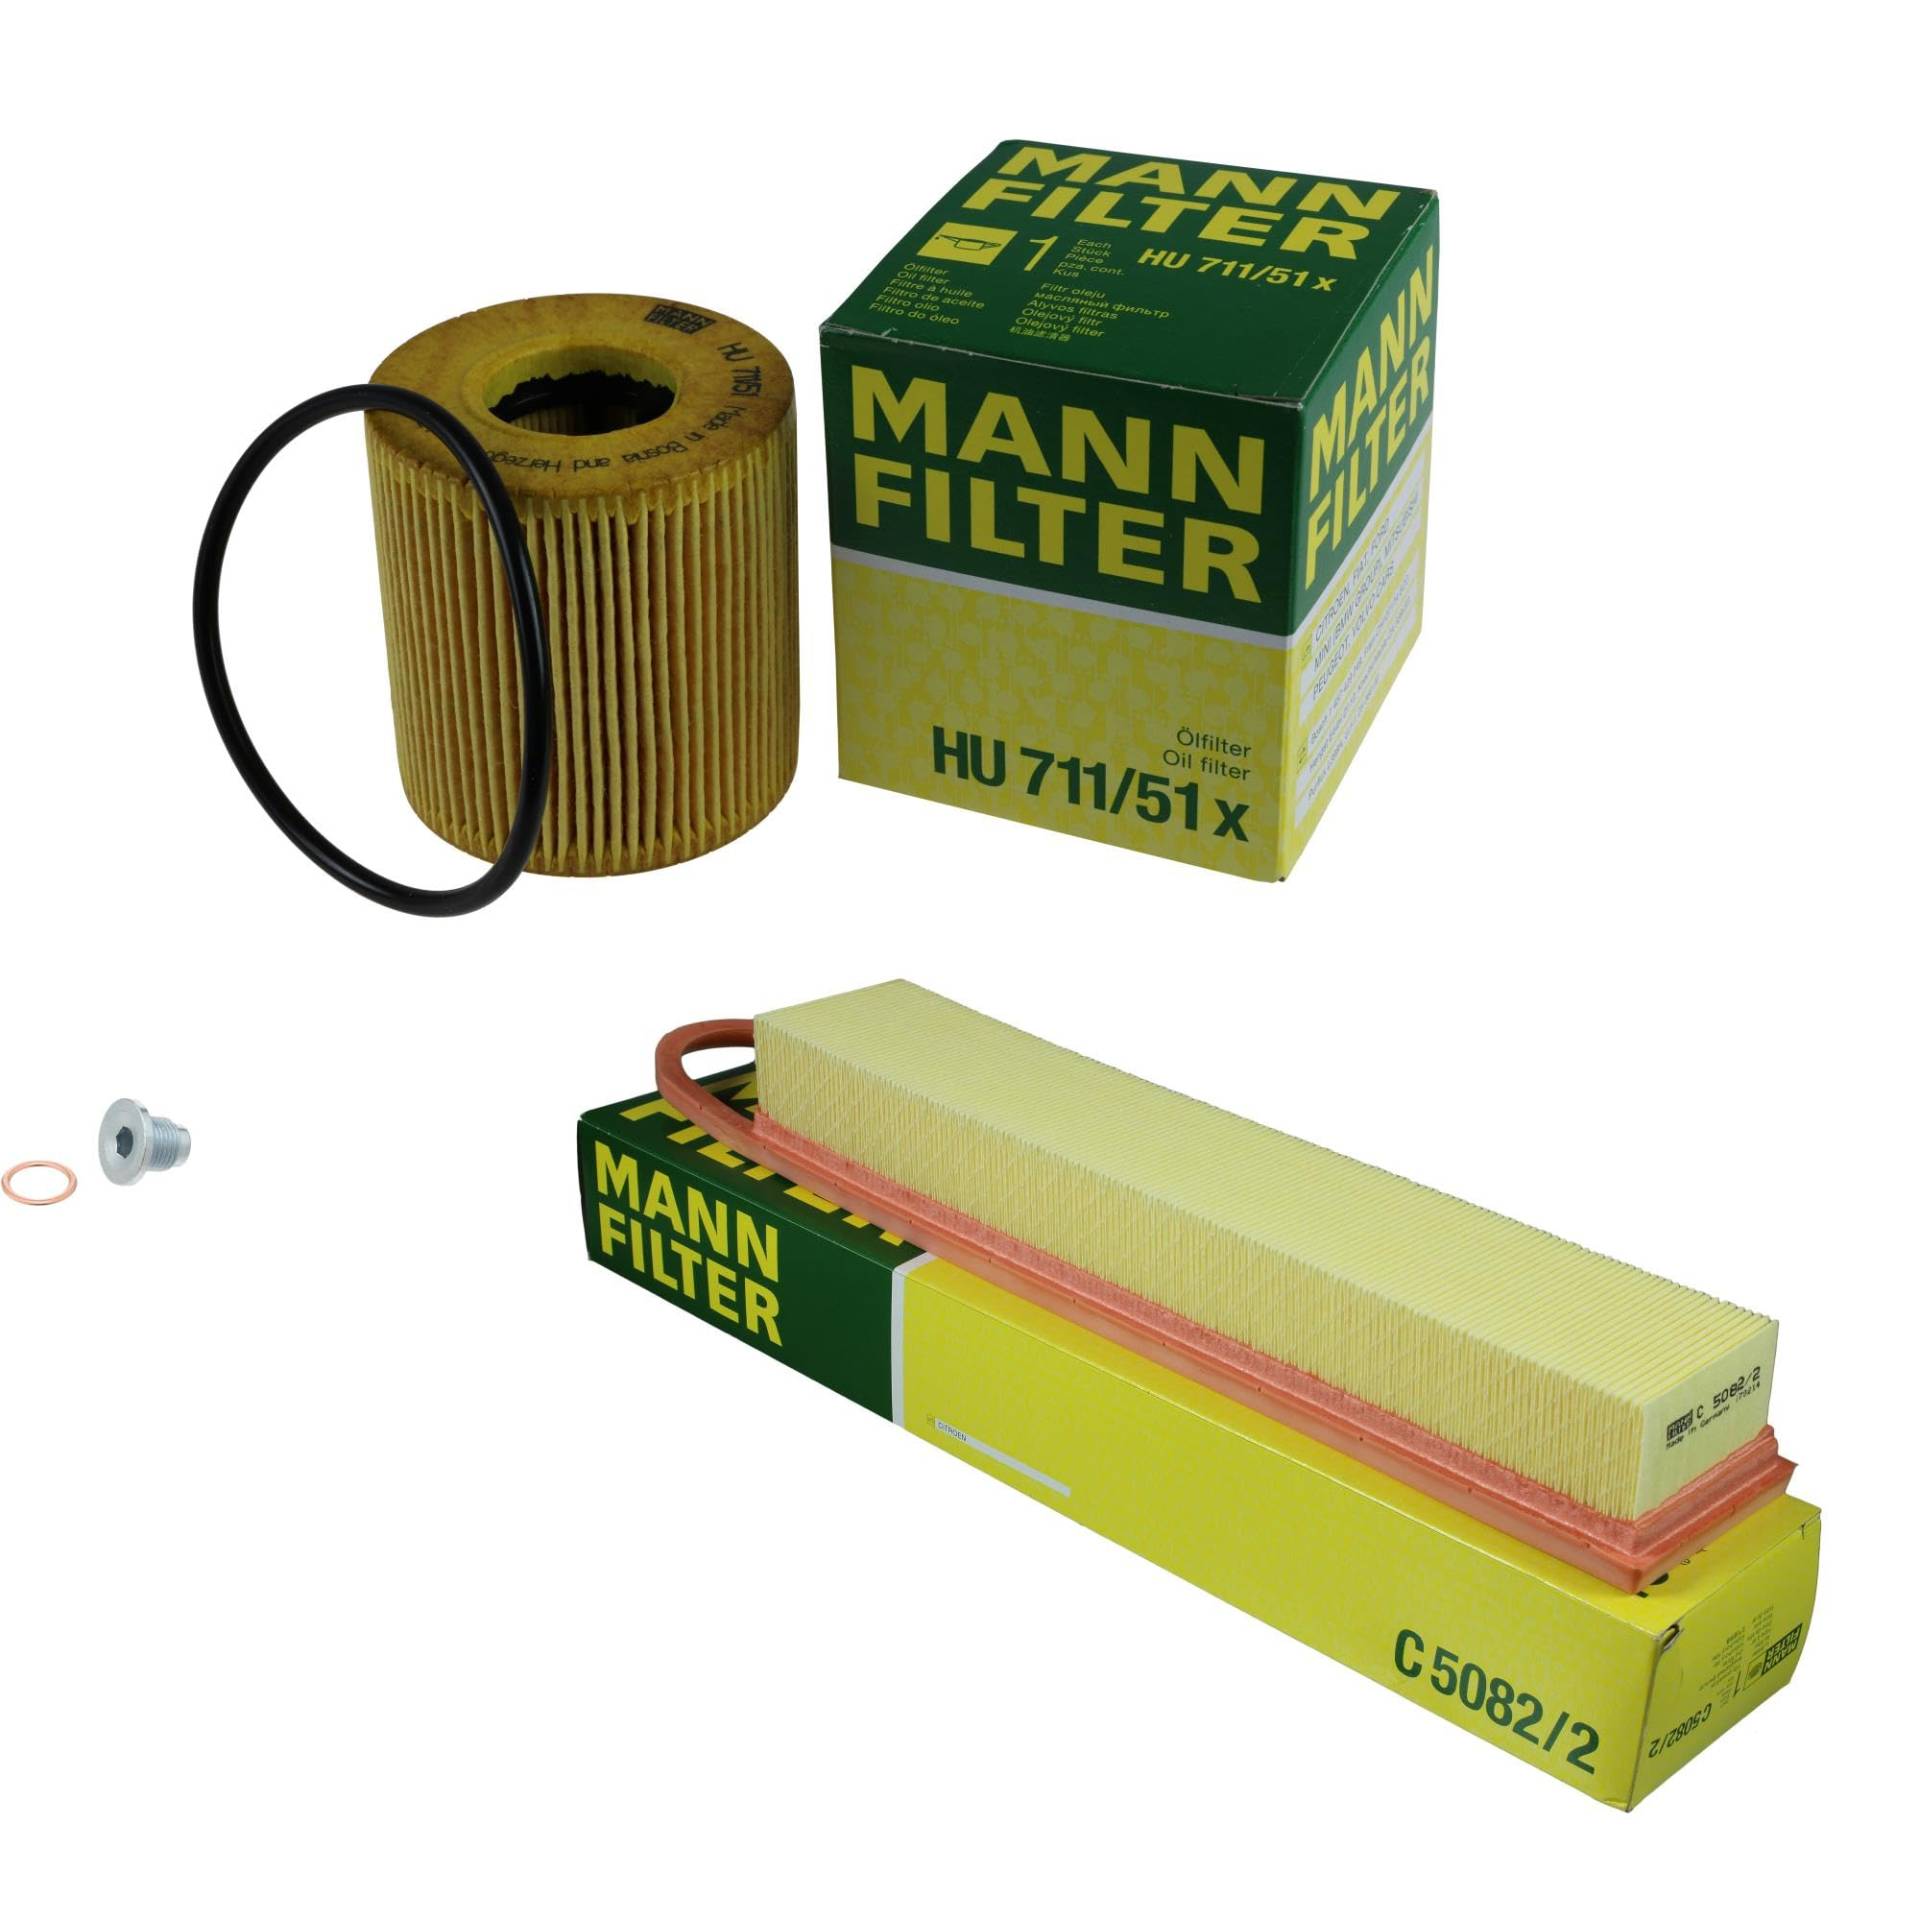 EISENFELS Filter Set Inspektionspaket erstellt mit MANN-FILTER Ölfilter HU 711/51 x, Luftfilter C 5082/2, Verschlussschraube von EISENFELS